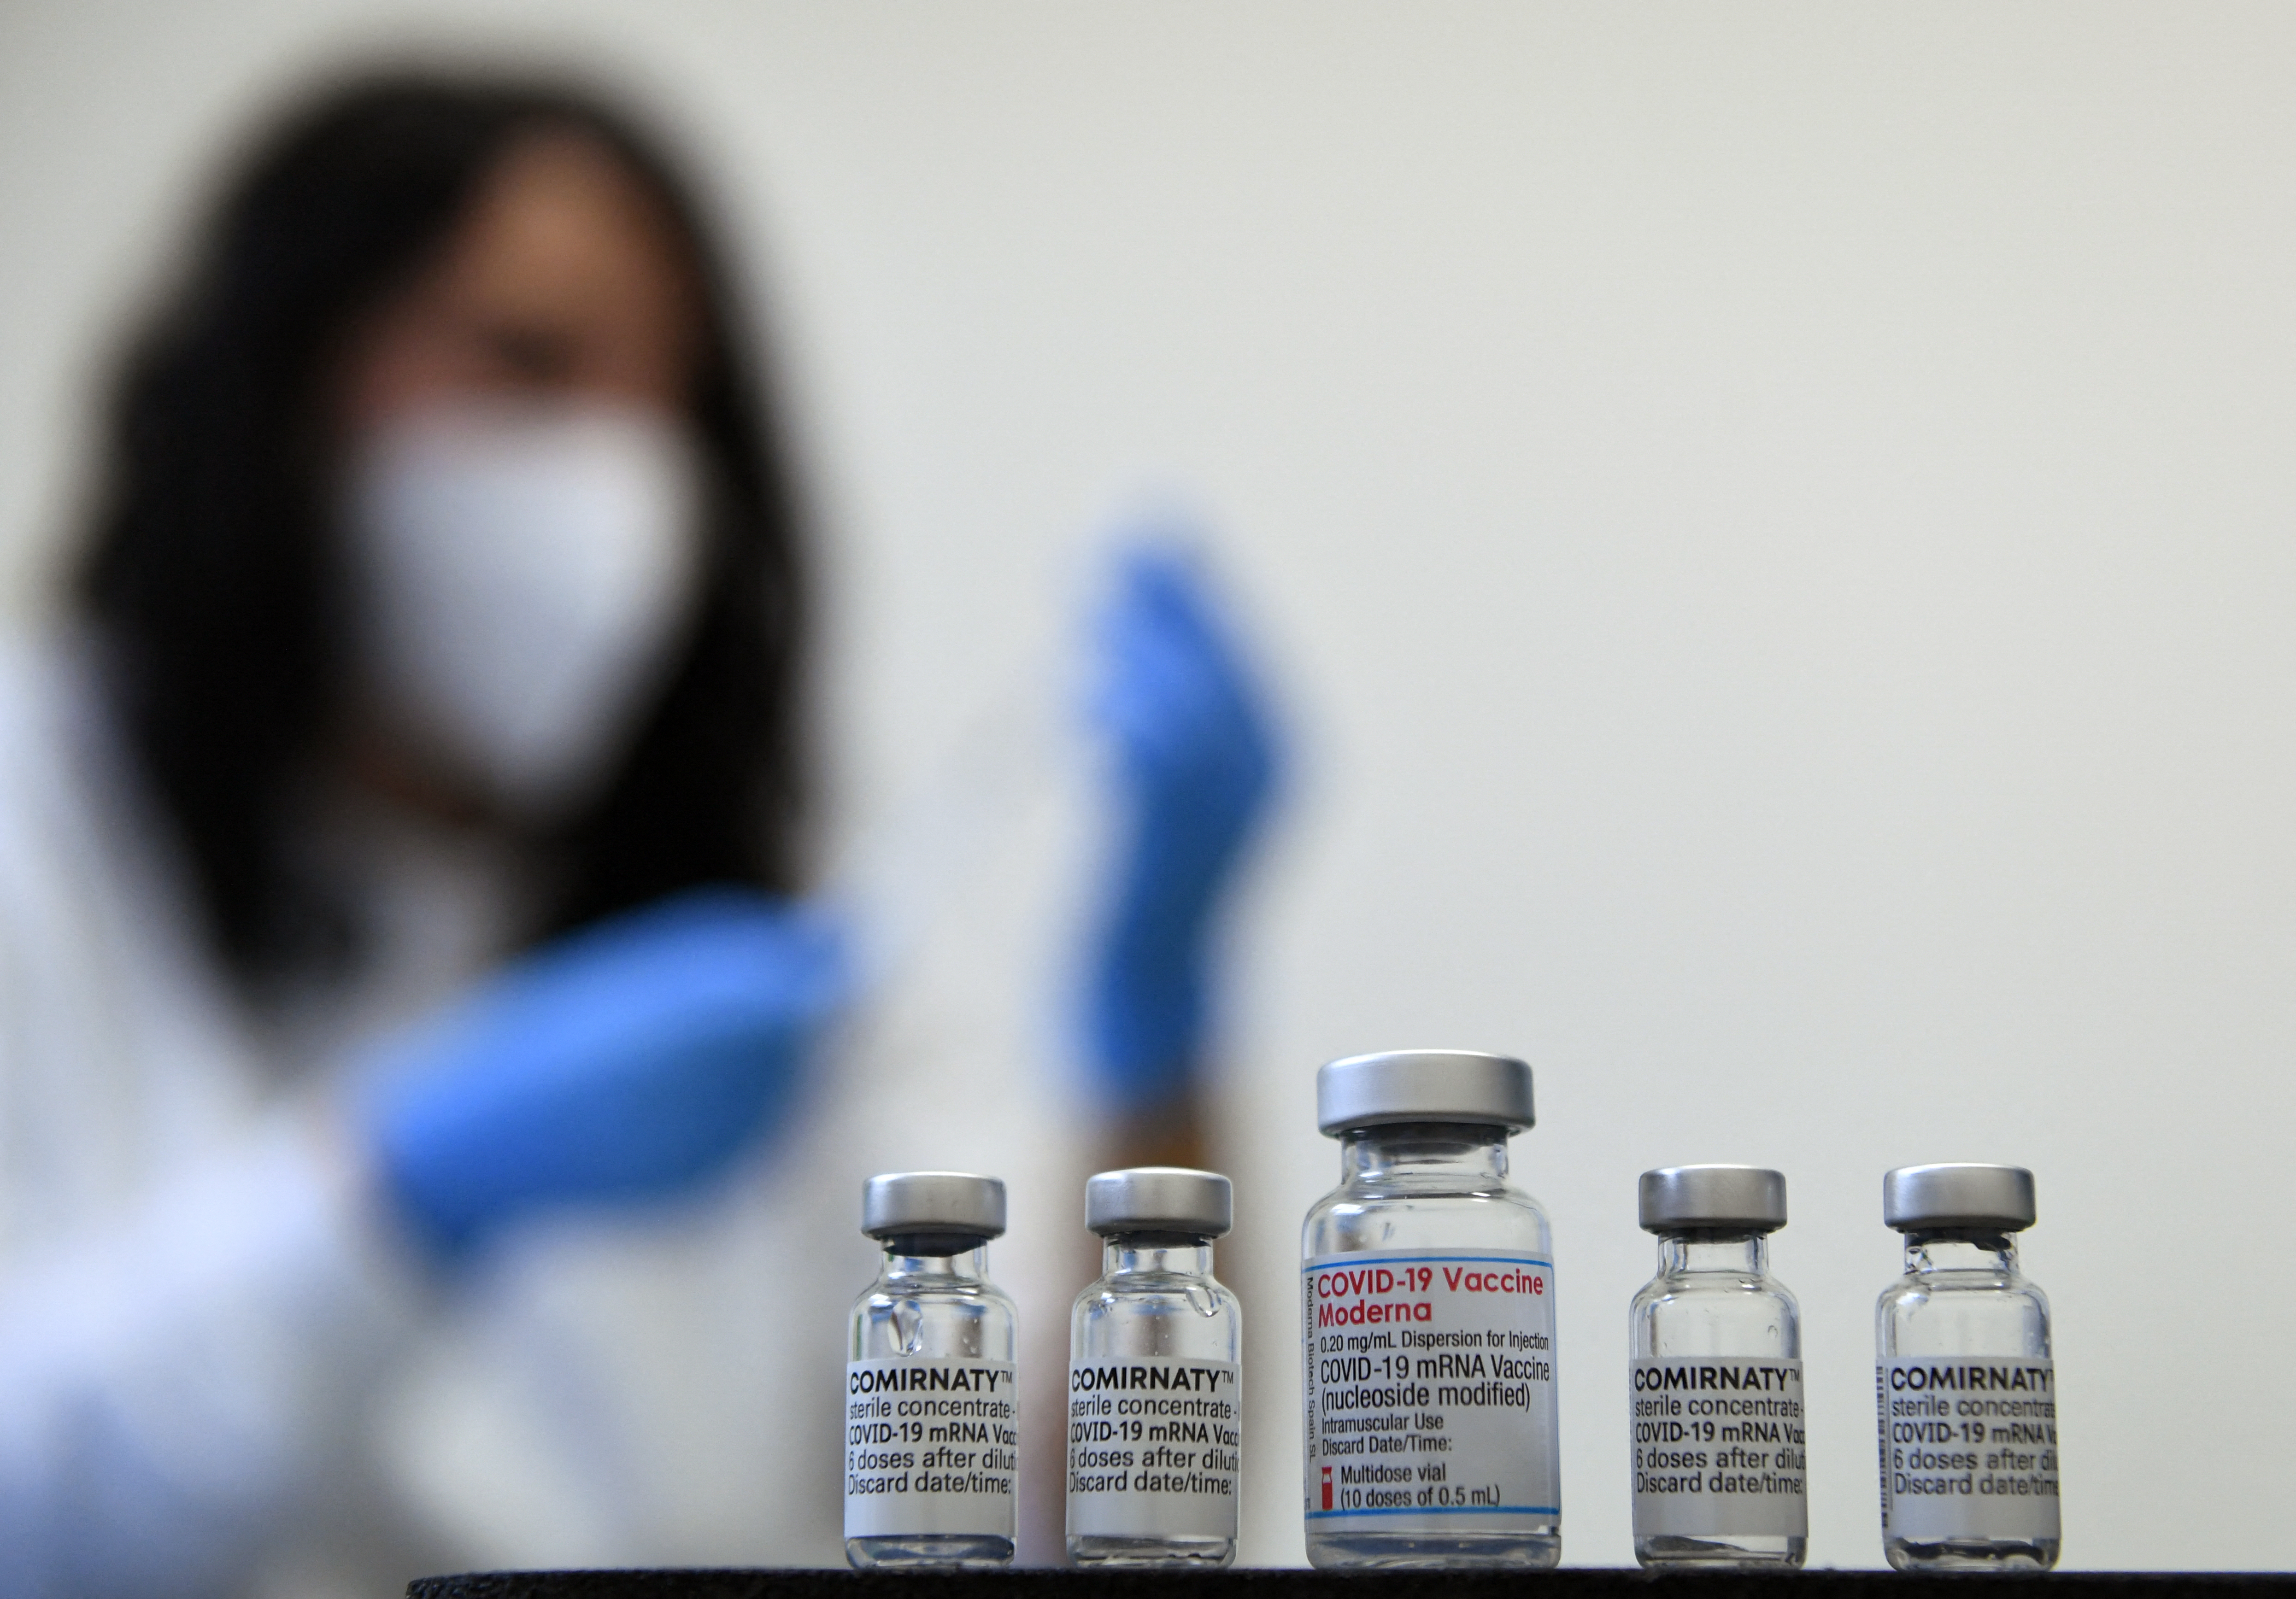 El presidente de Moderna dice que las vacunas anticovid creadas hasta ahora podrían tener dificultades para combatir la variante ómicron. (Foto Prensa Libre: AFP)